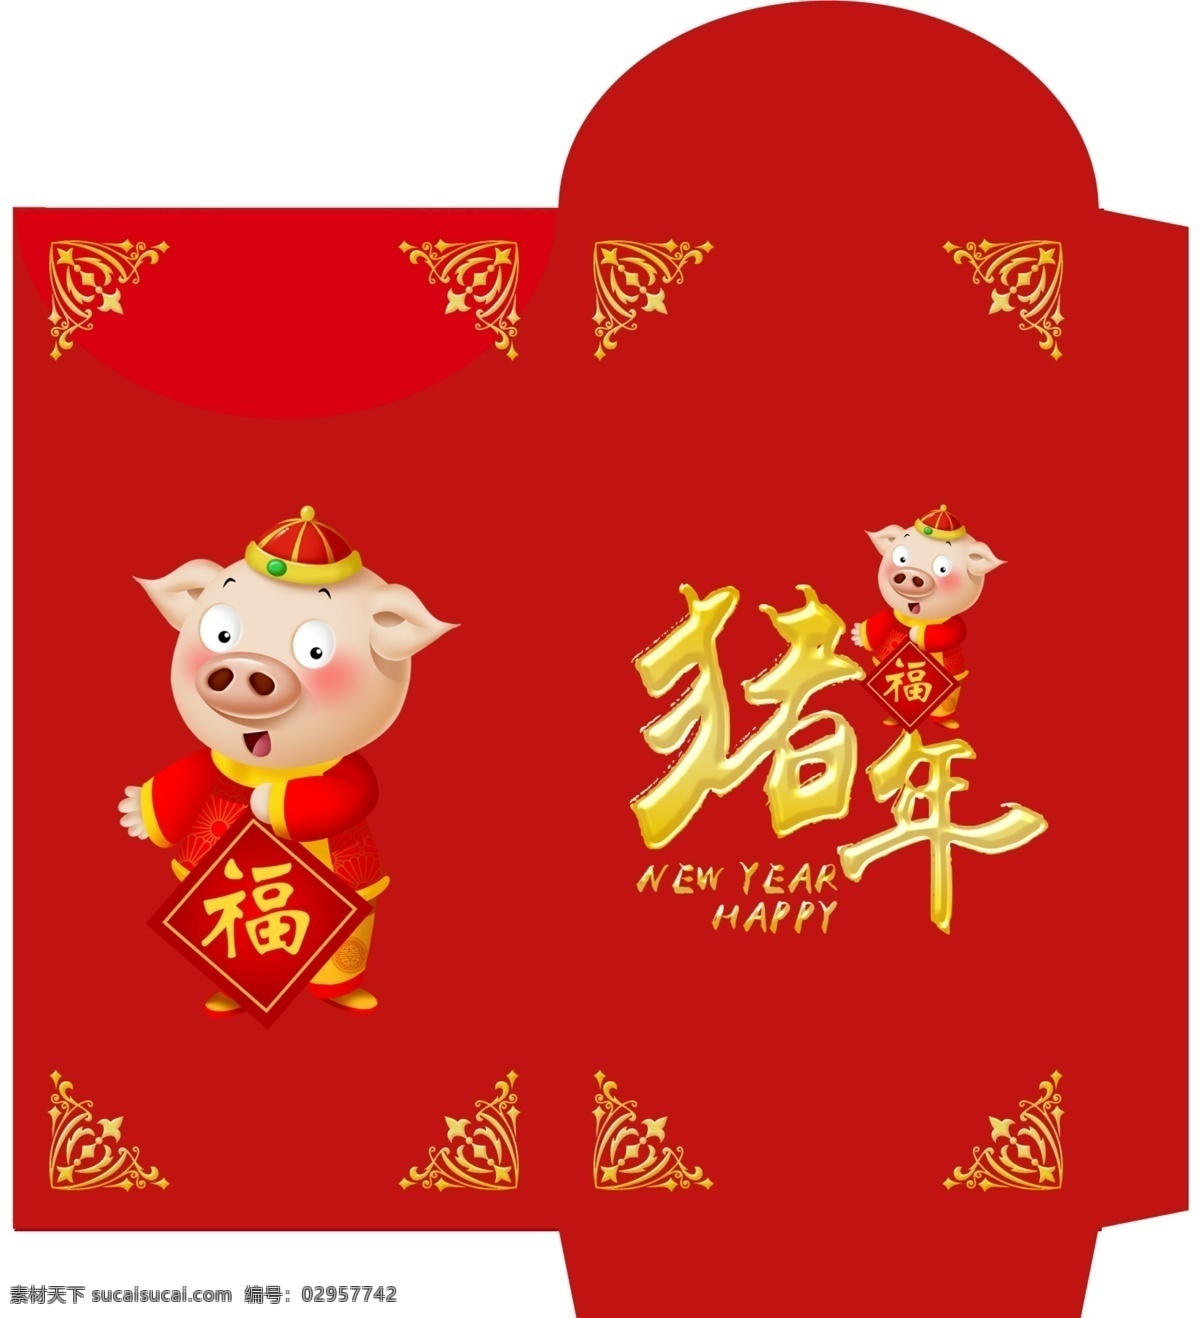 大气 2019 猪年 红包 免费素材 平面素材 psd素材 平面模板 红包模板 红包设计 大气设计